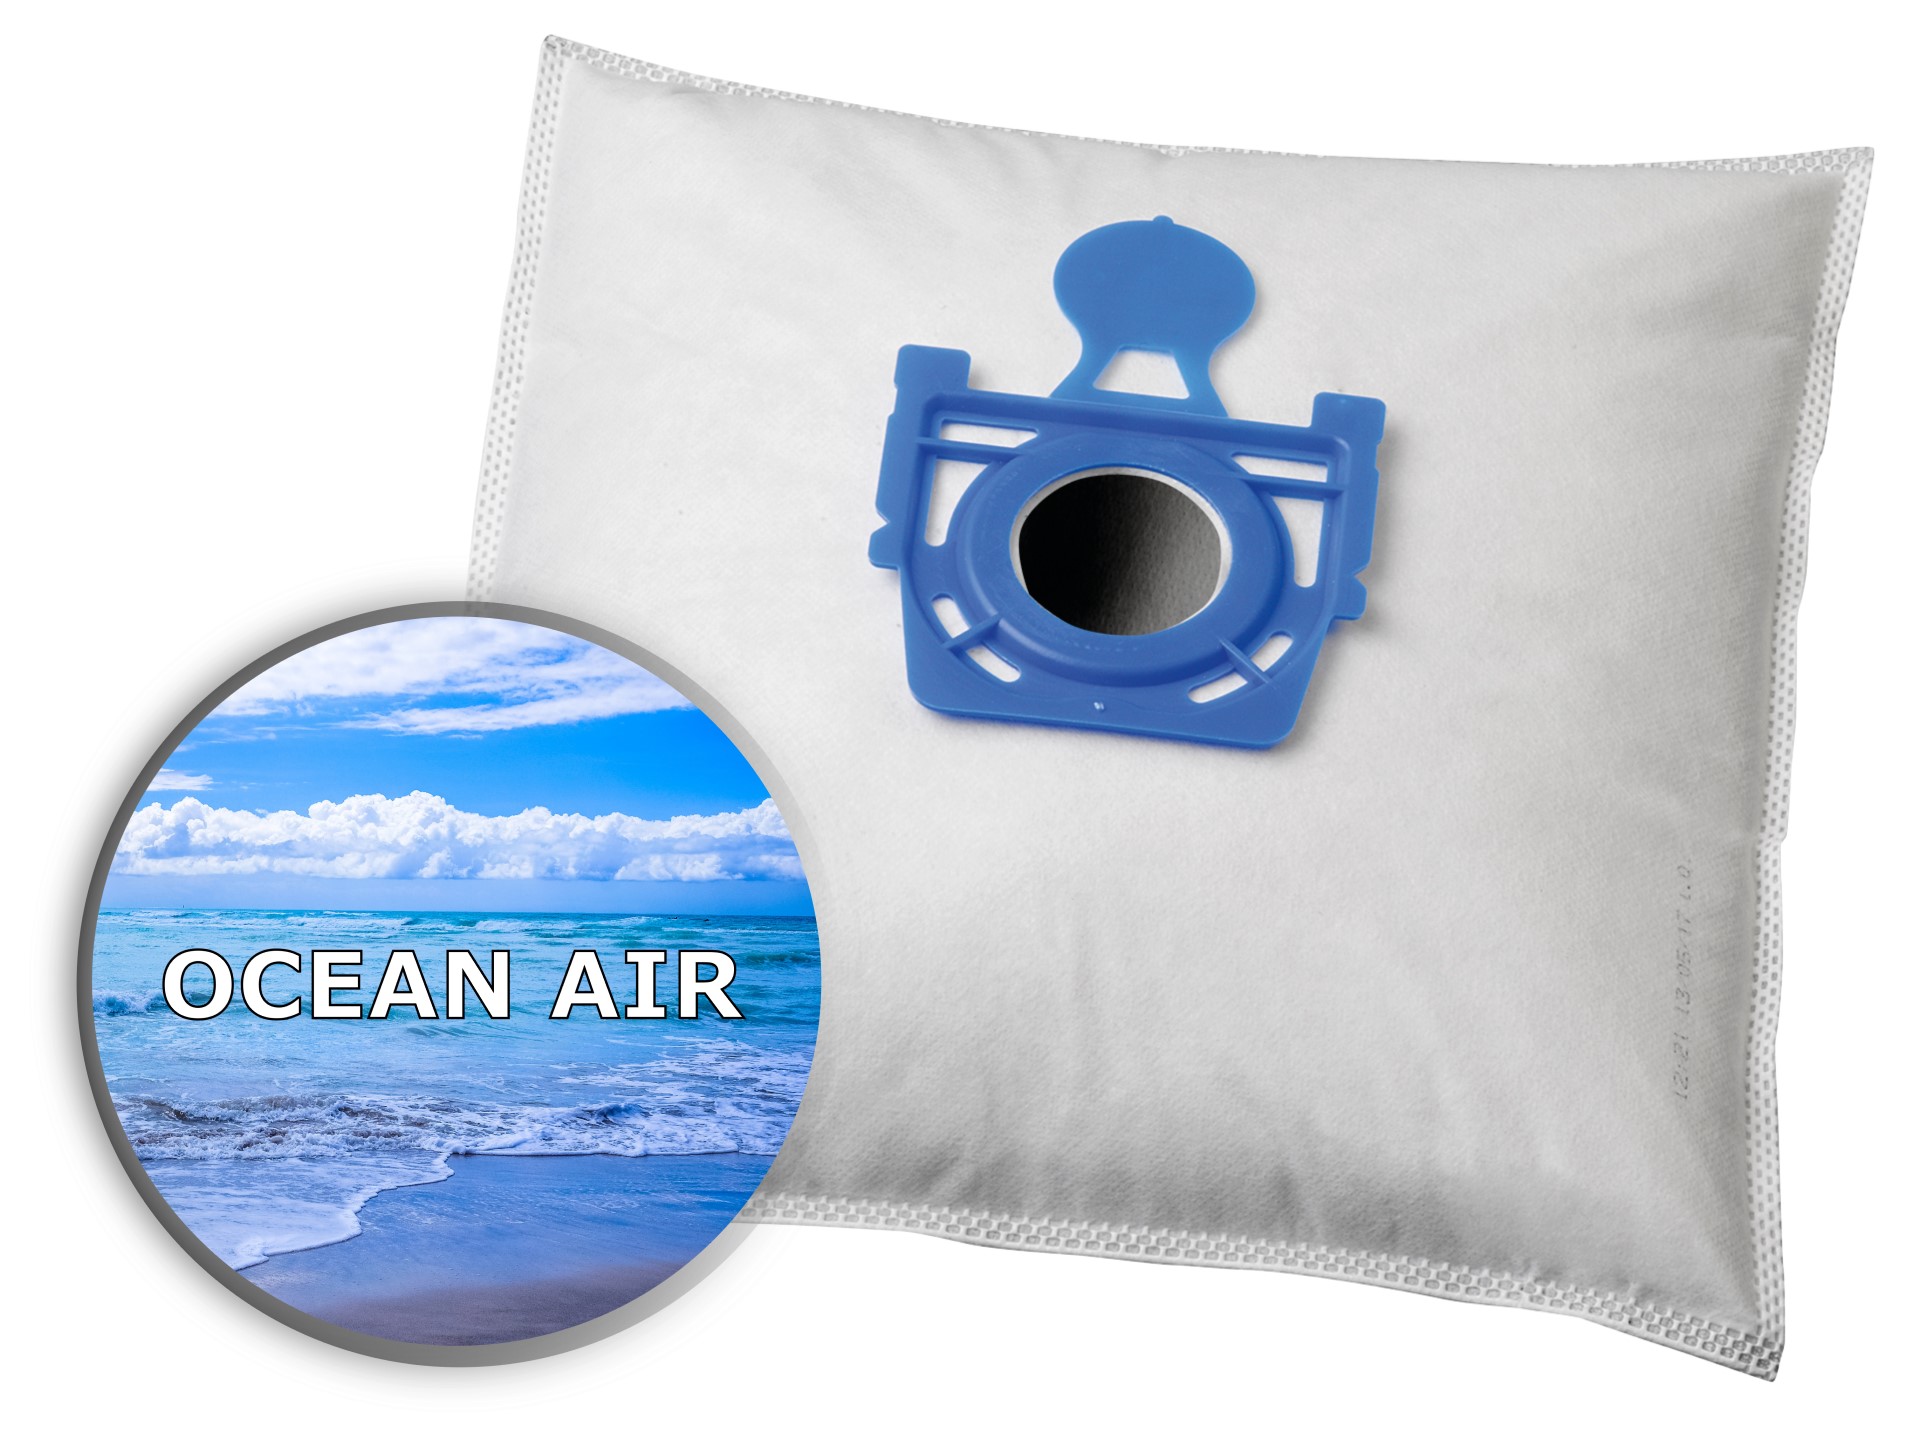 KOMA ZE01PL OCEAN AIR - Aromás porszívózsákok Zelmer Cobra, Flip, Furio, műanyag előlappal, 4db